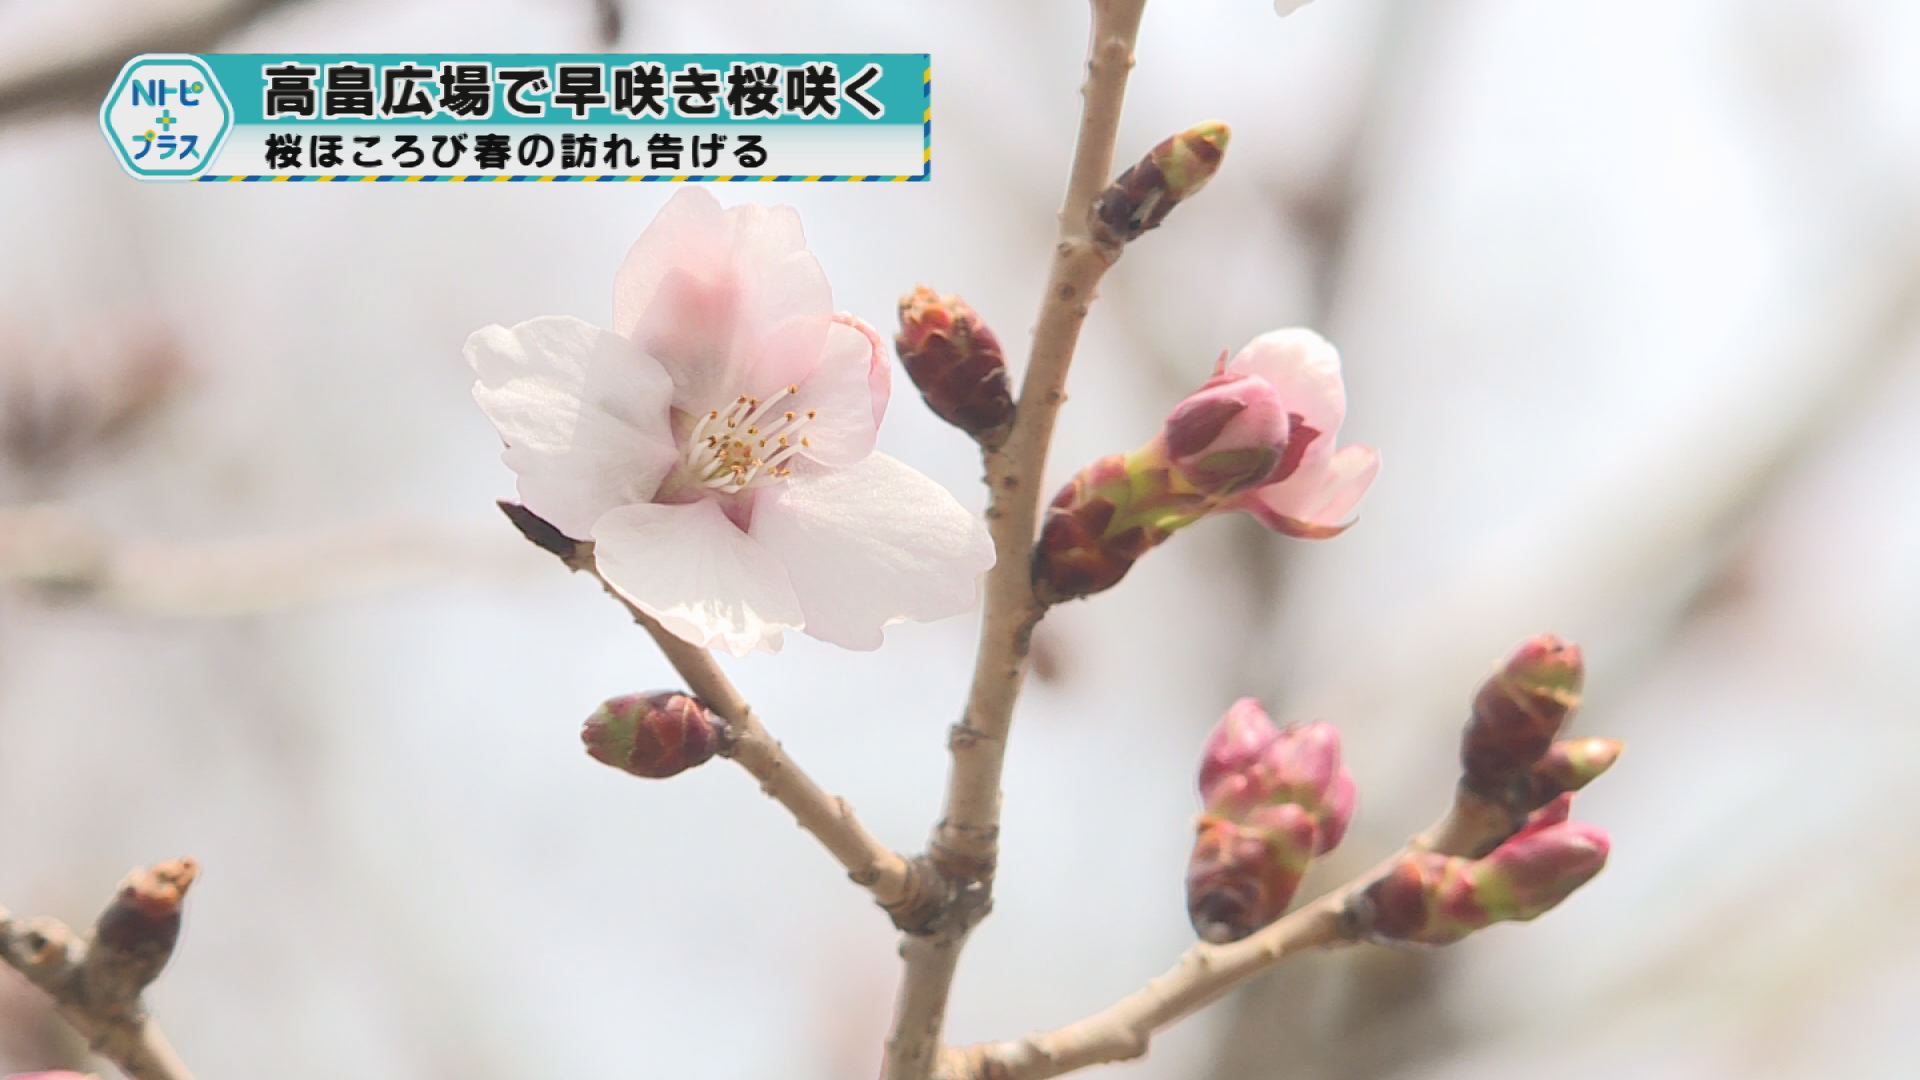 「高畠広場で早咲き桜咲く」桜ほころび春の訪れ告げる